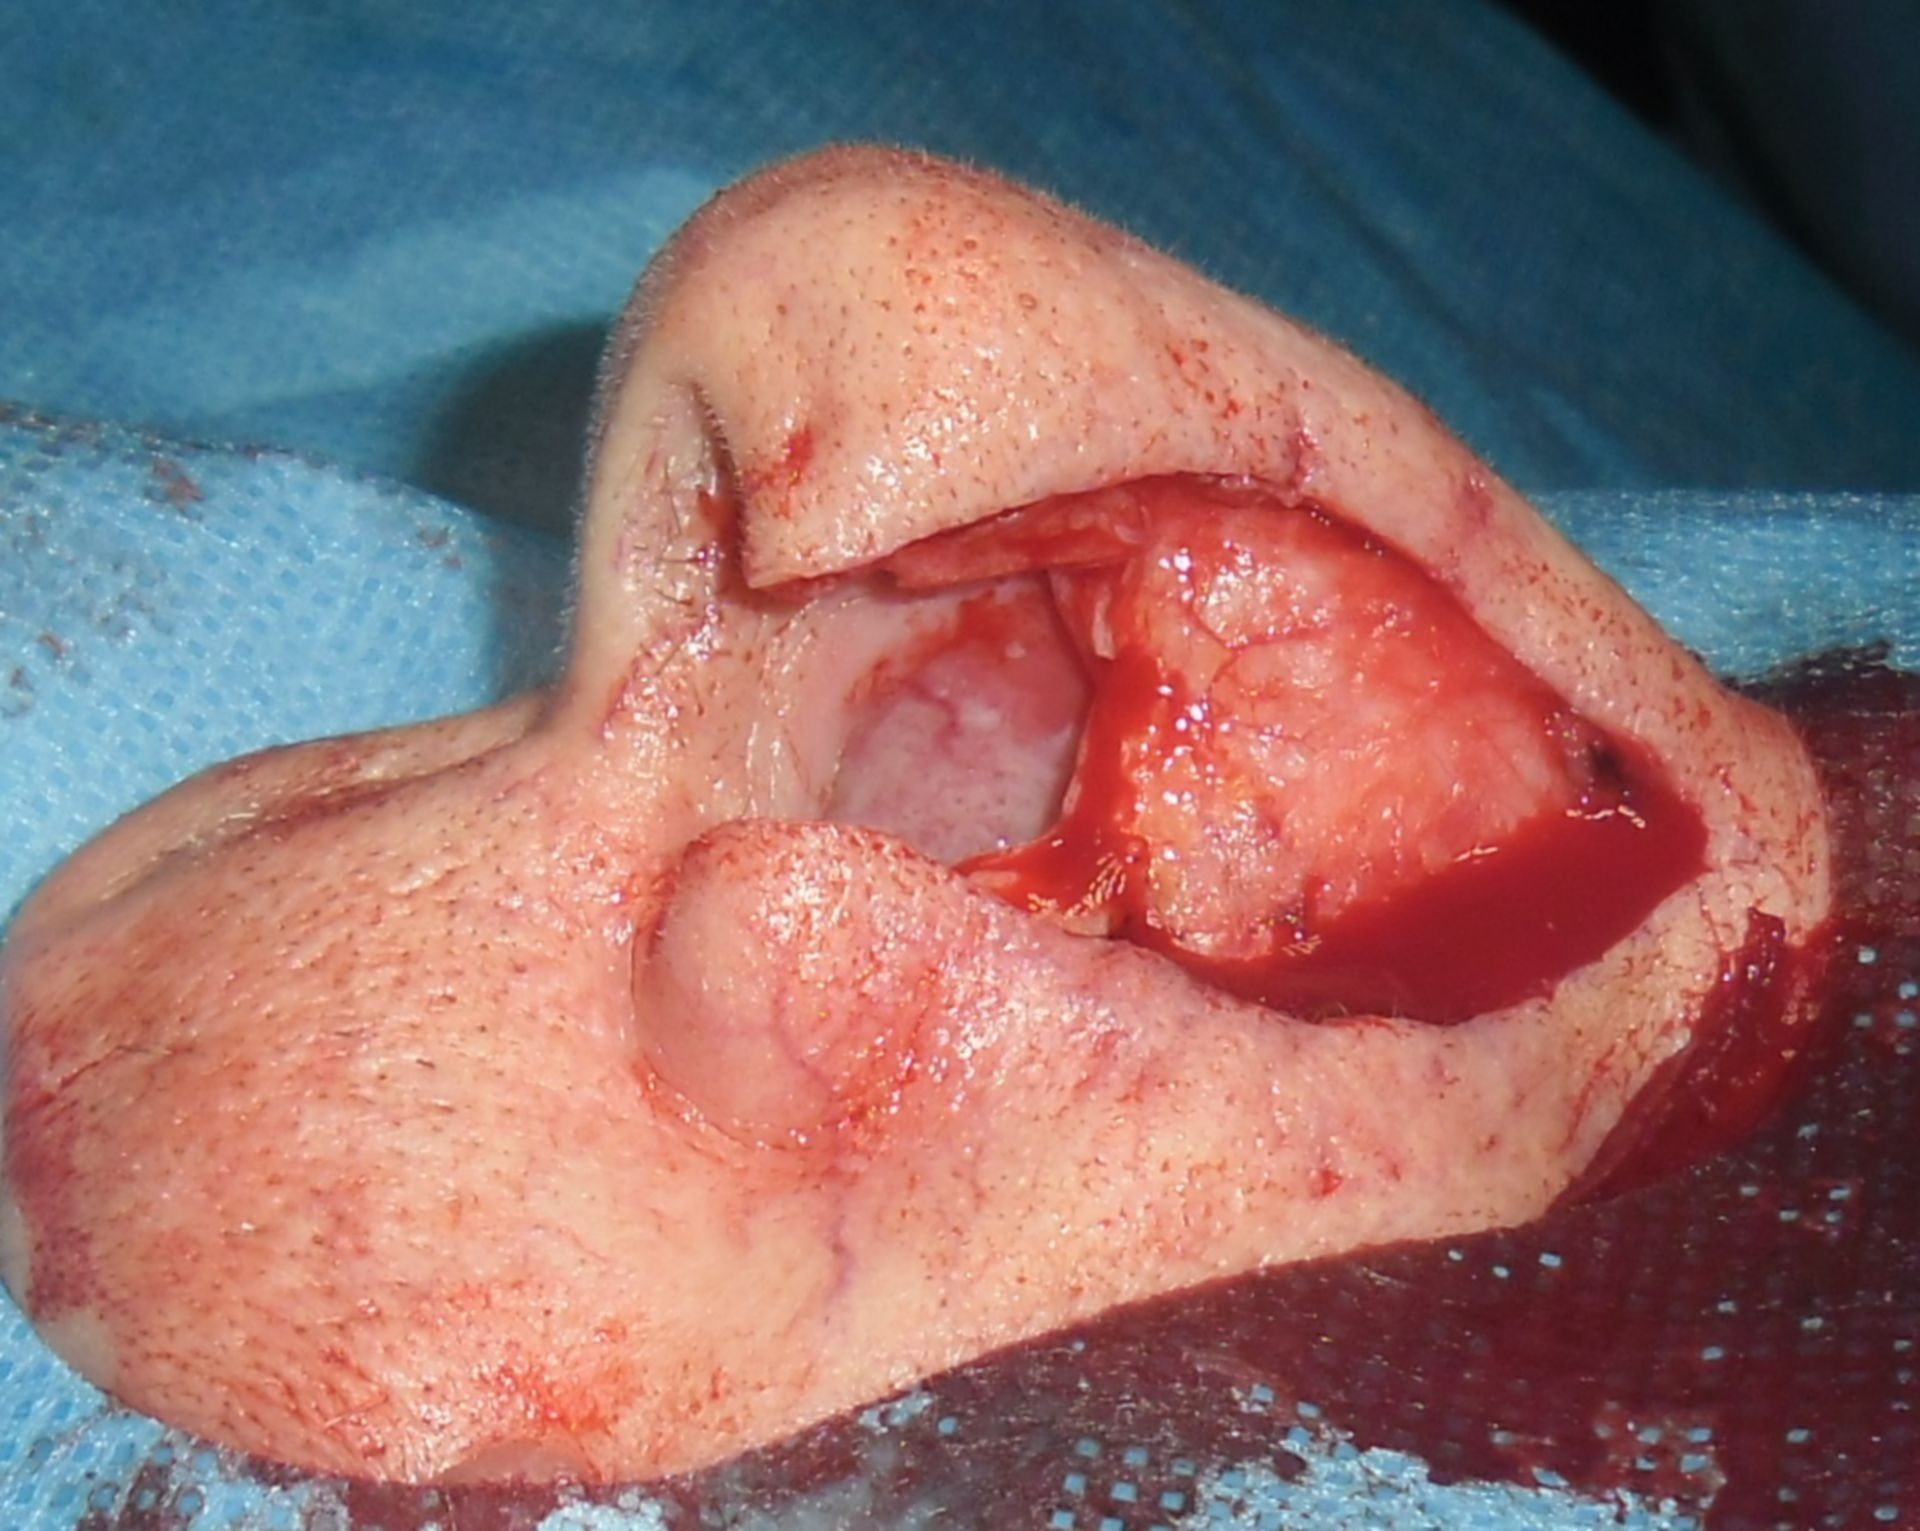 Carcinoma celular escamoso de la nariz después de resección